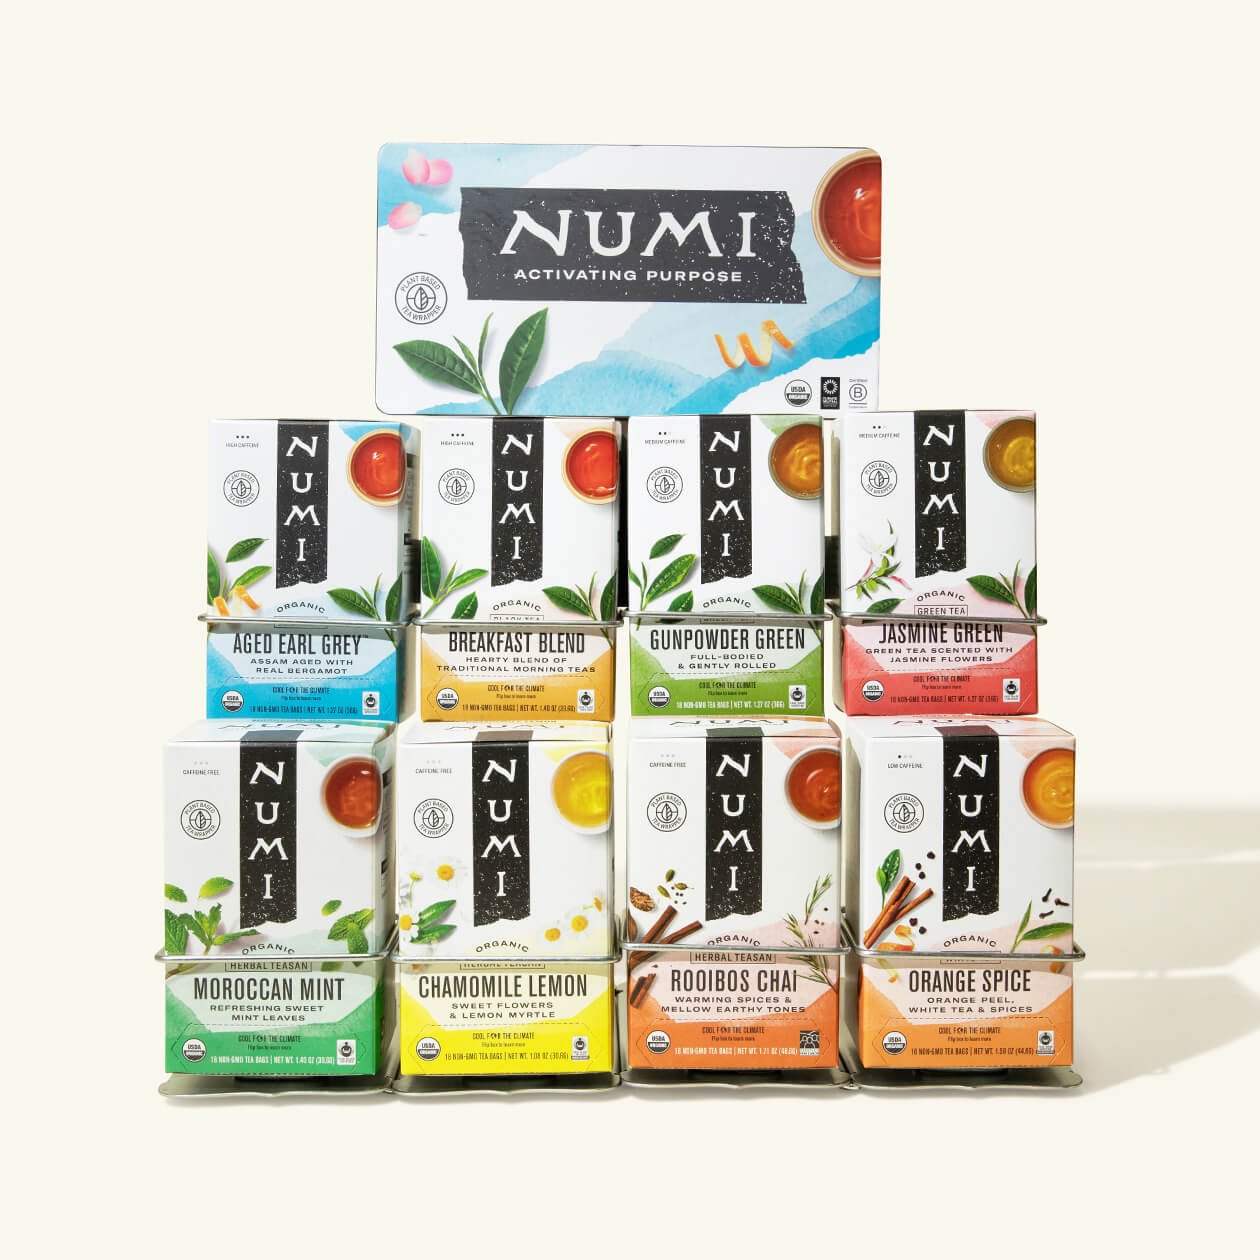 Stainless Steel Numi Tea Rack: Holds Eight Boxes of Tea